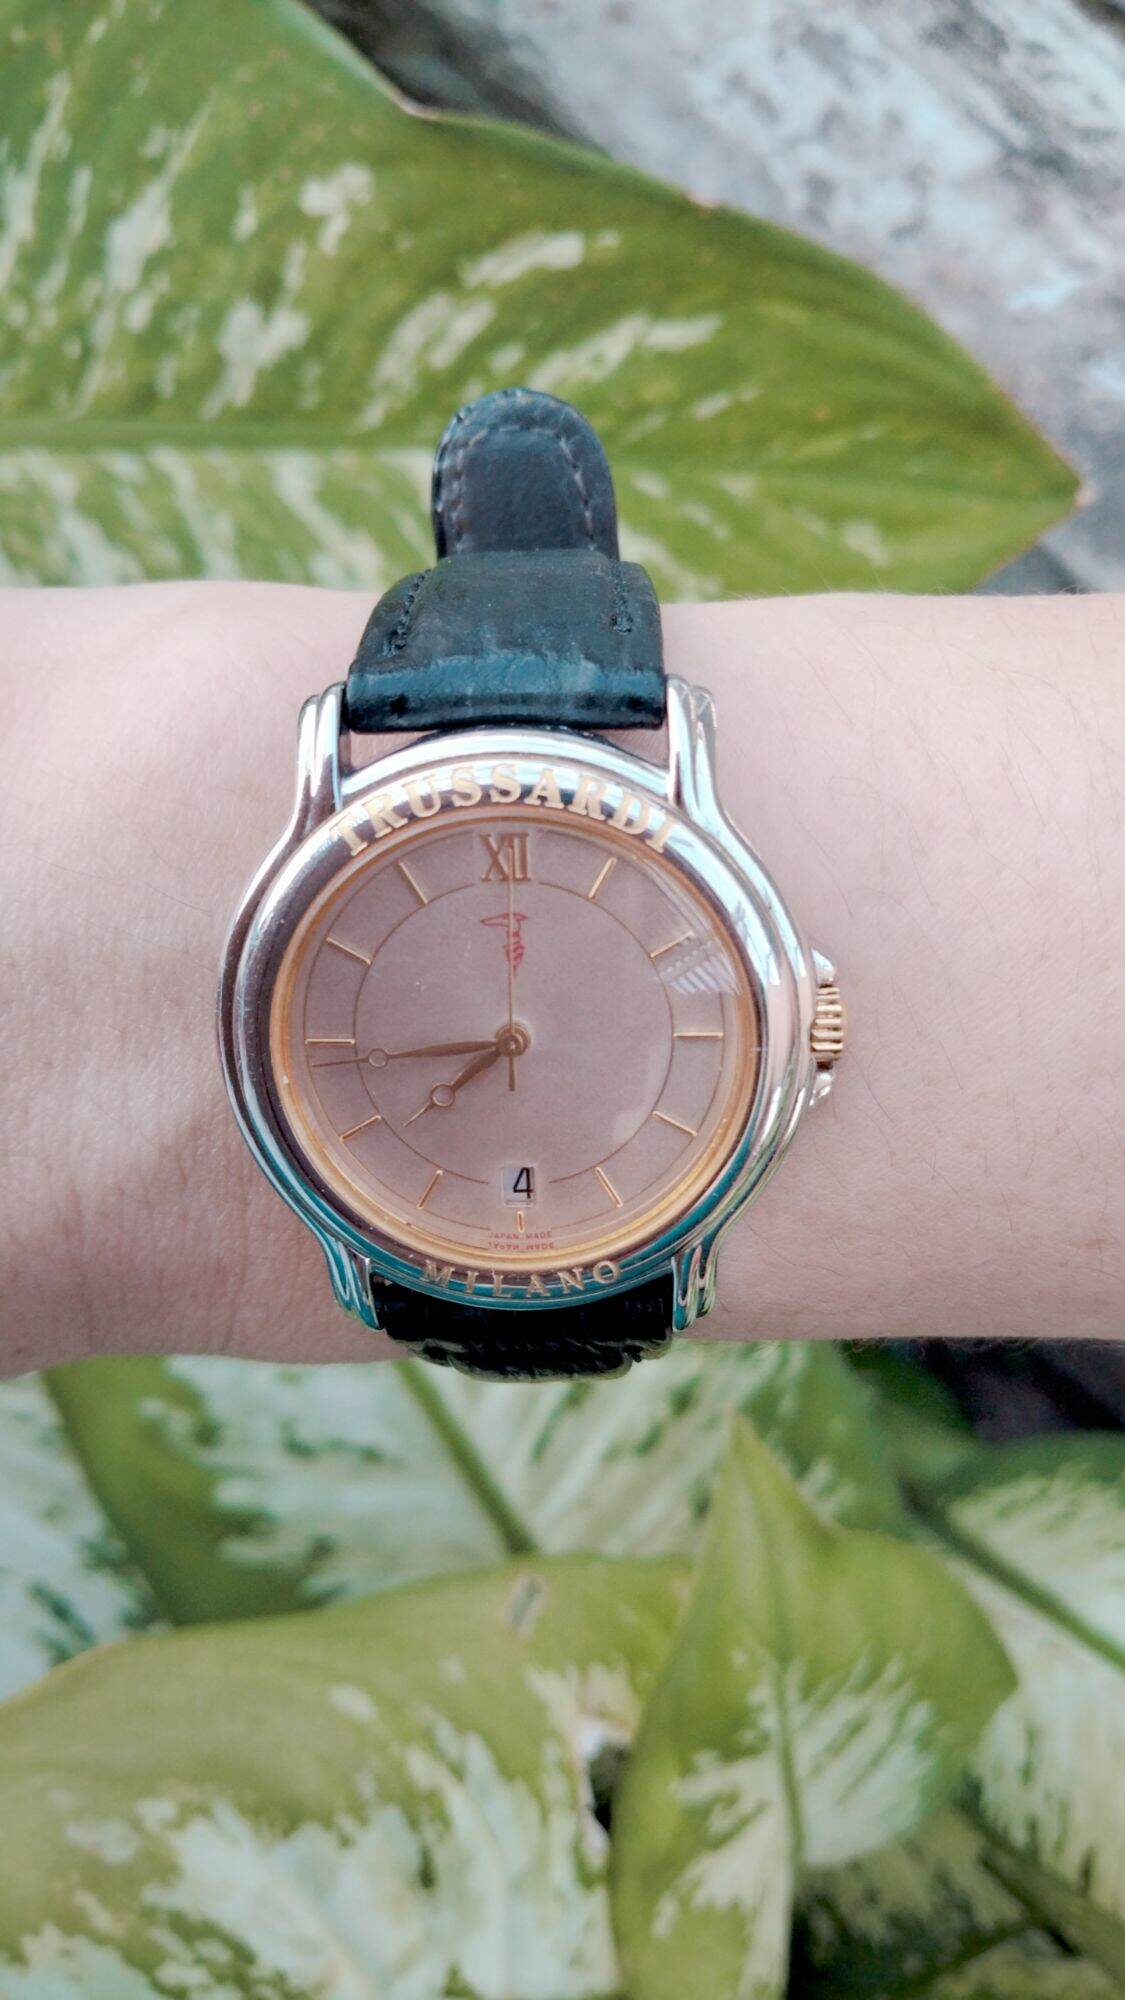 1 đồng hồ Nữ thương hiệu Trussardi máy Nhật.Size mặt 31,5-33